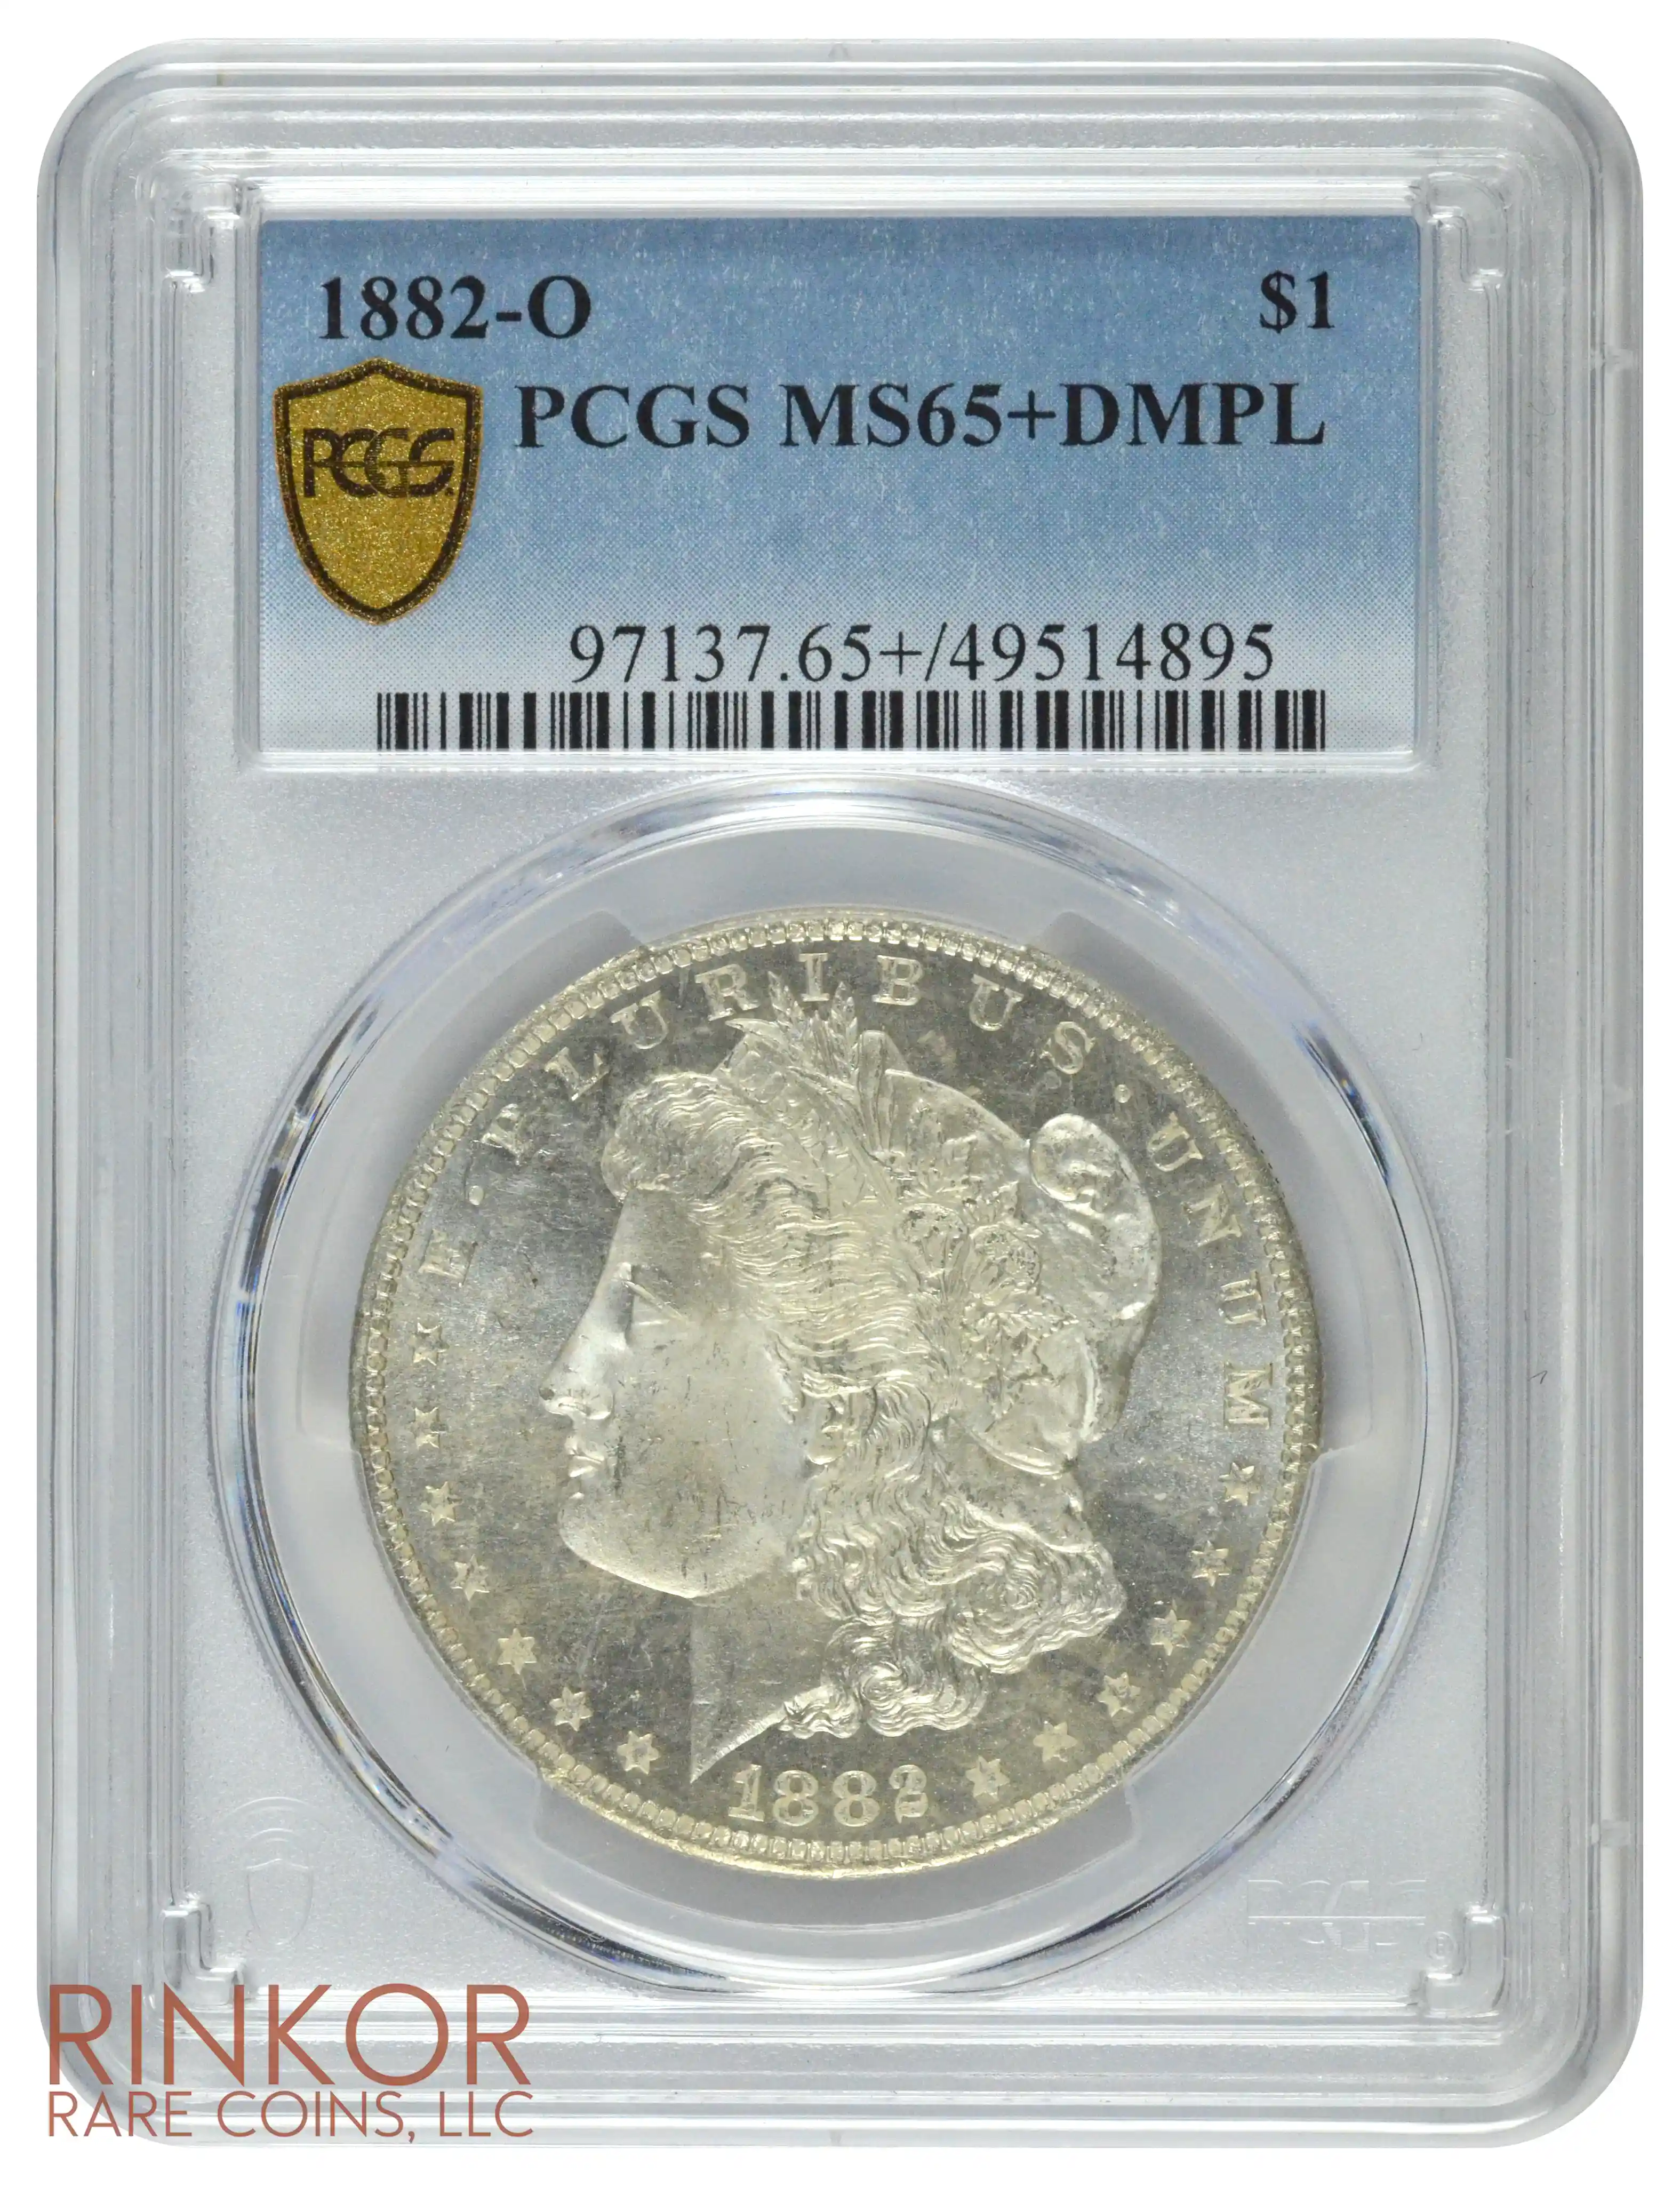 1882-O $1 PCGS MS 65+ DMPL